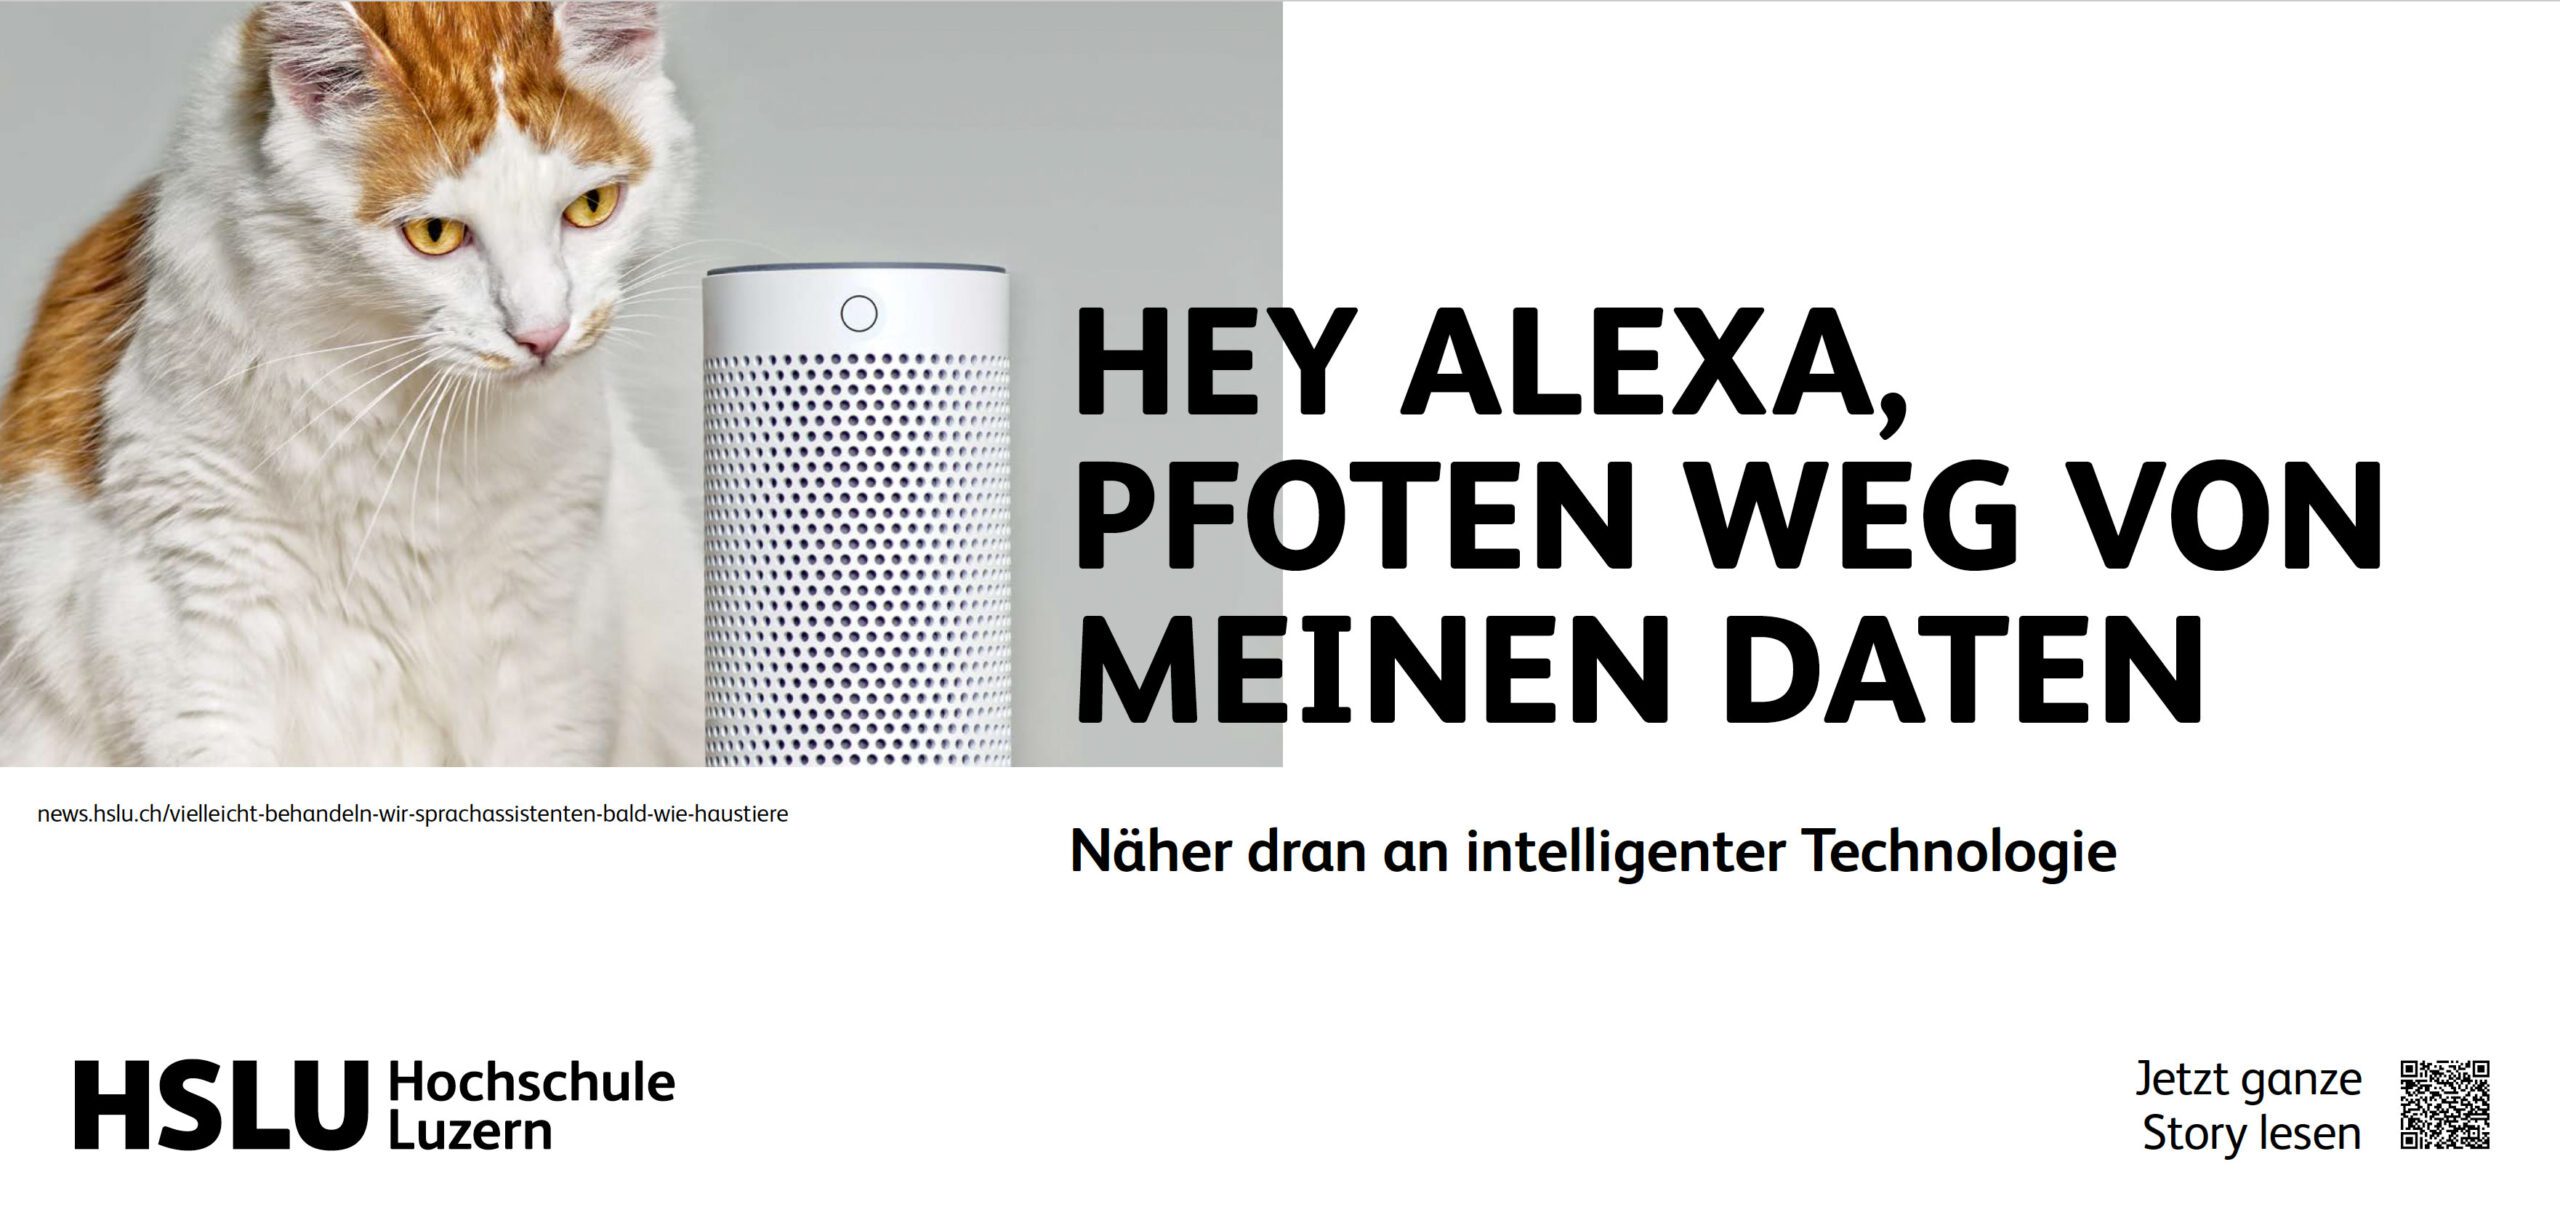 Neuer Markenauftritt: Hey Alexa, Pfogen weg von meinen Daten